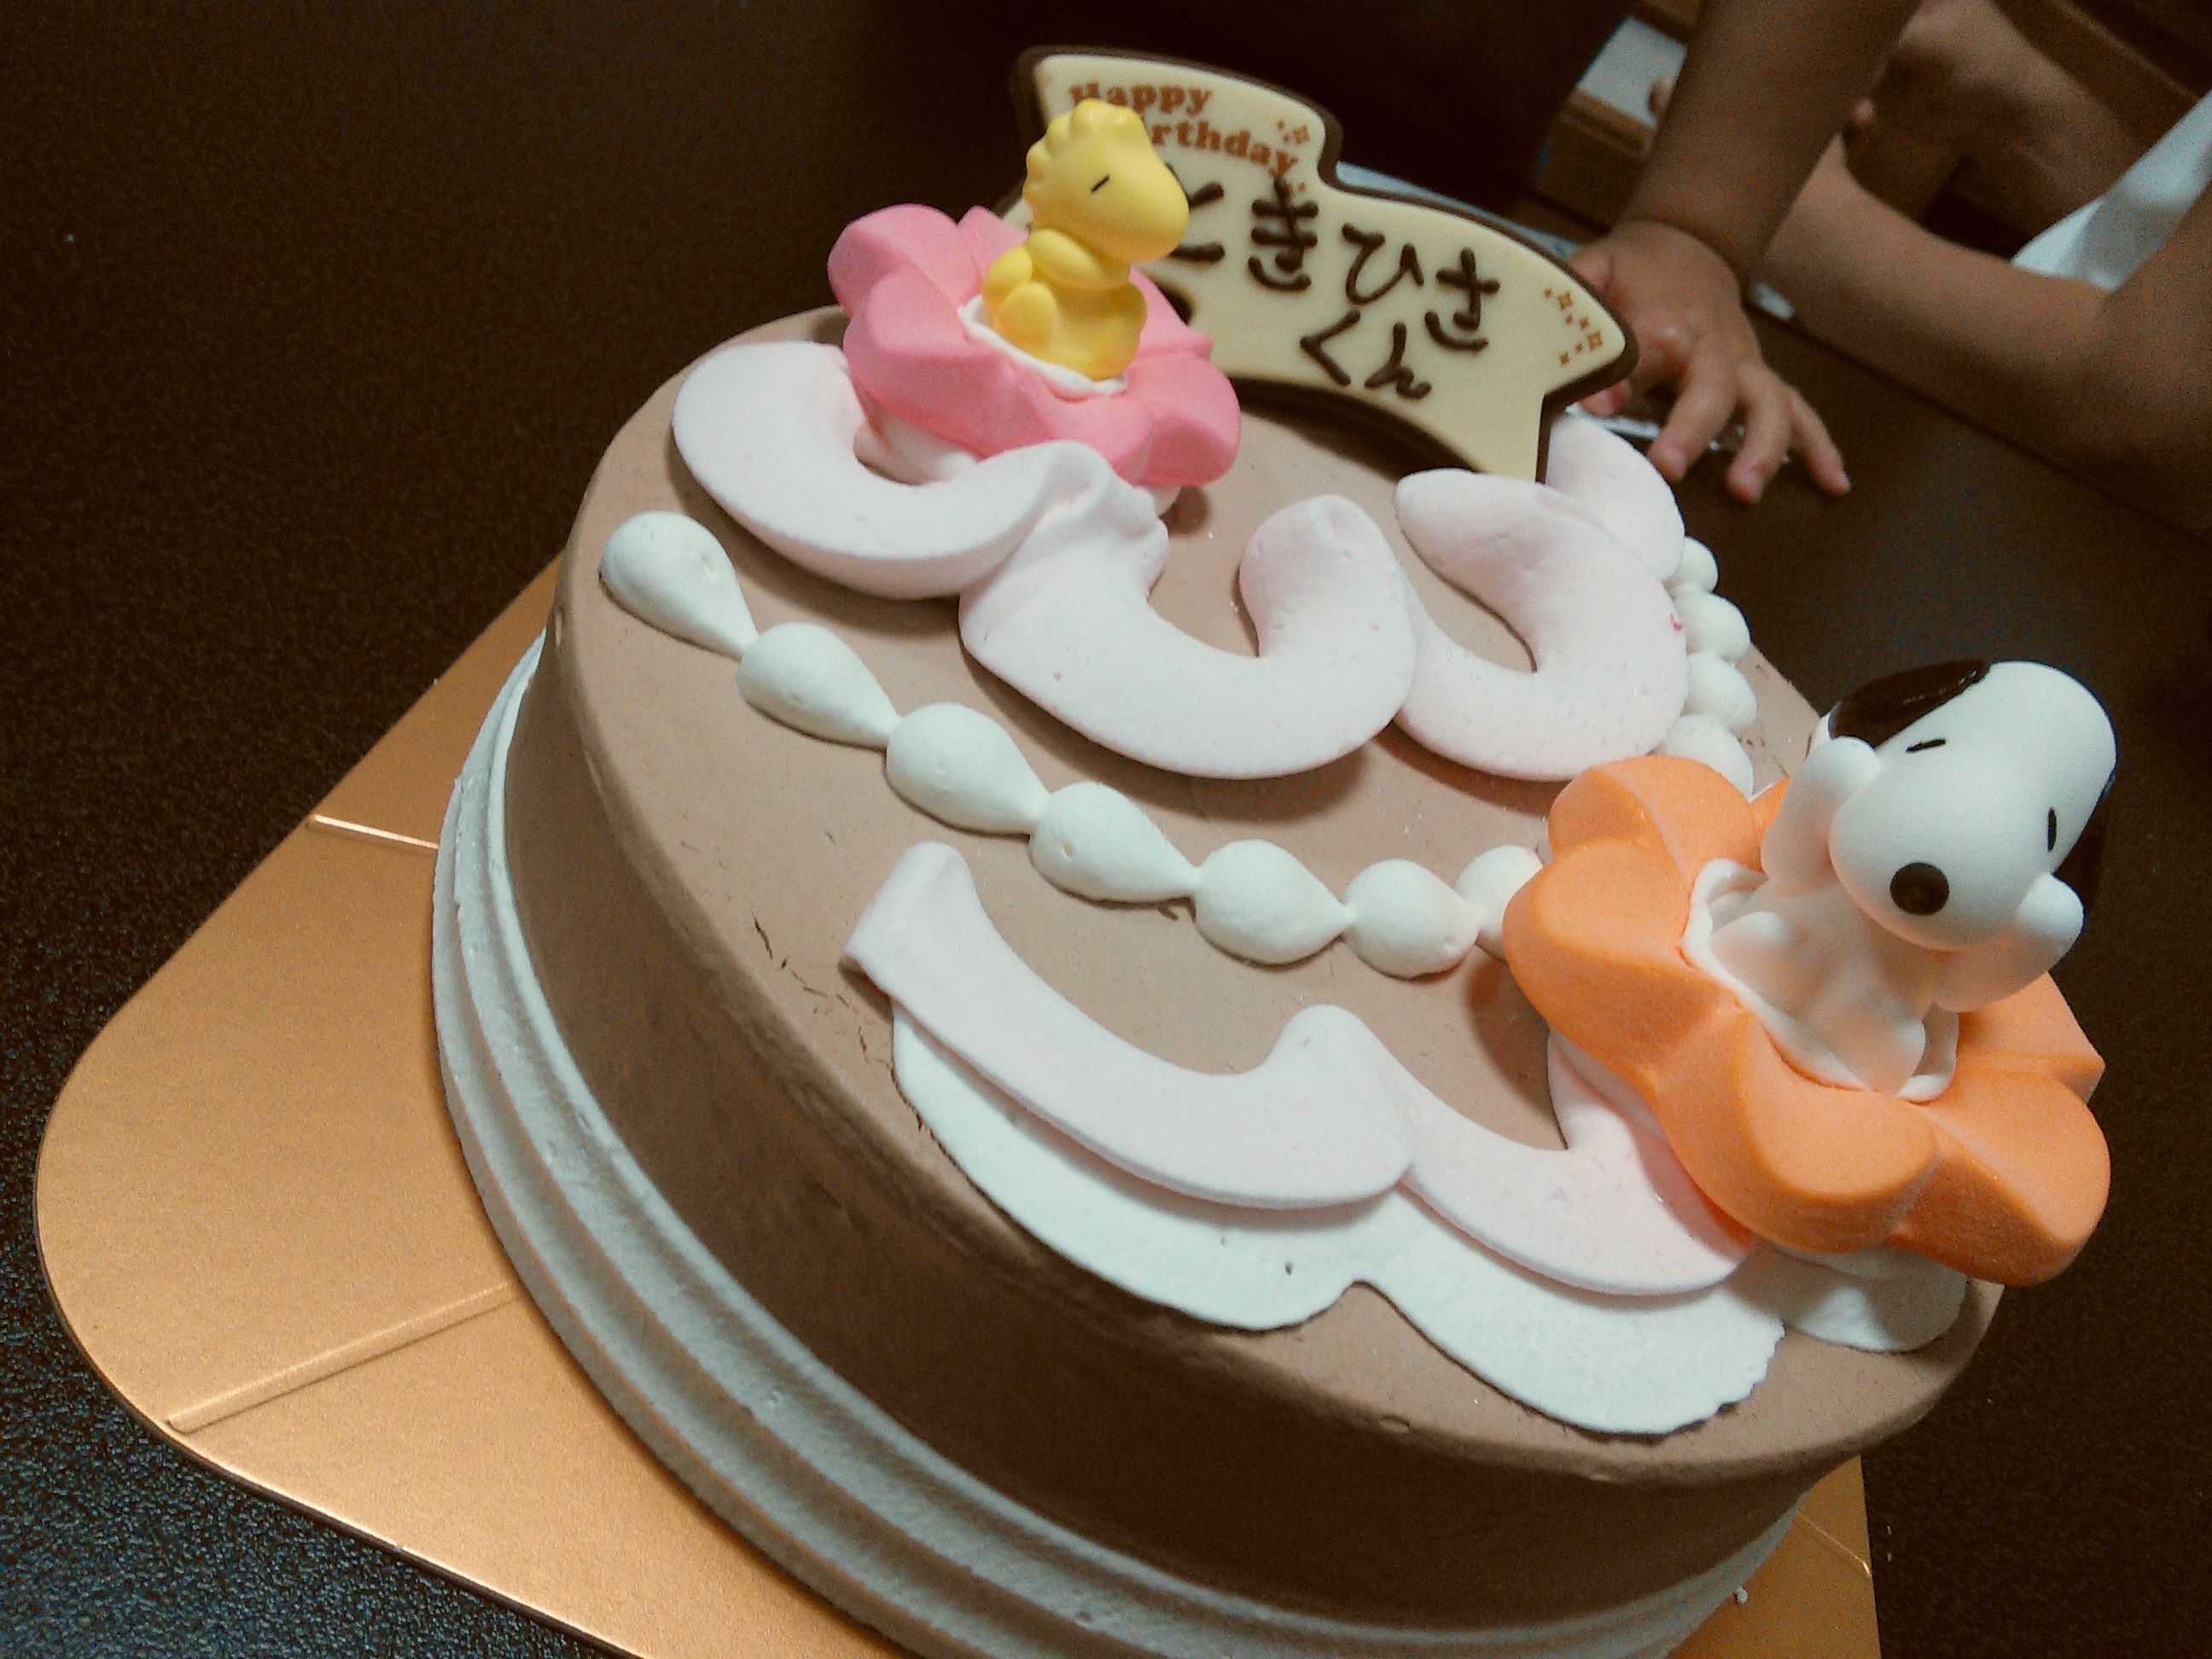 初耳 31アイスケーキの価格は店舗で異なる スヌーピー フラワードリームファンタジーの値段 大阪 奈良グルメのブログ ミシュランごっこ